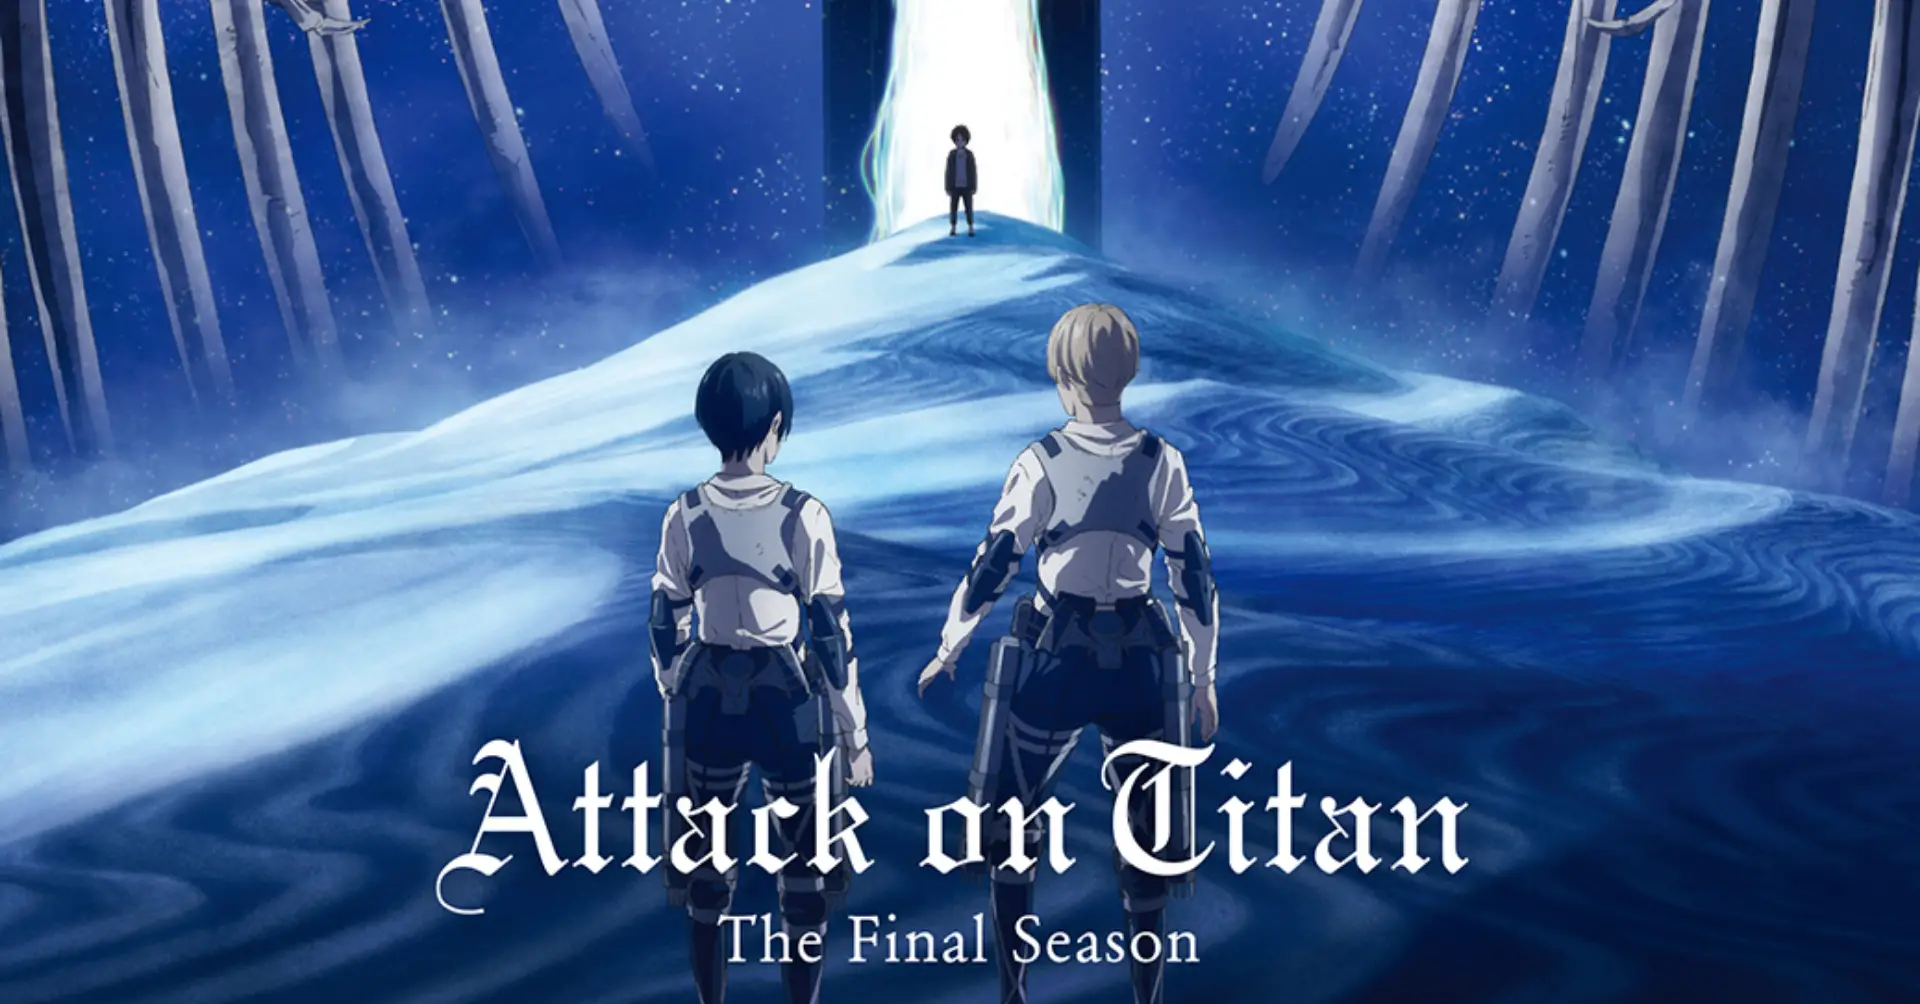 Poster de Attack on Tittan Final Season II